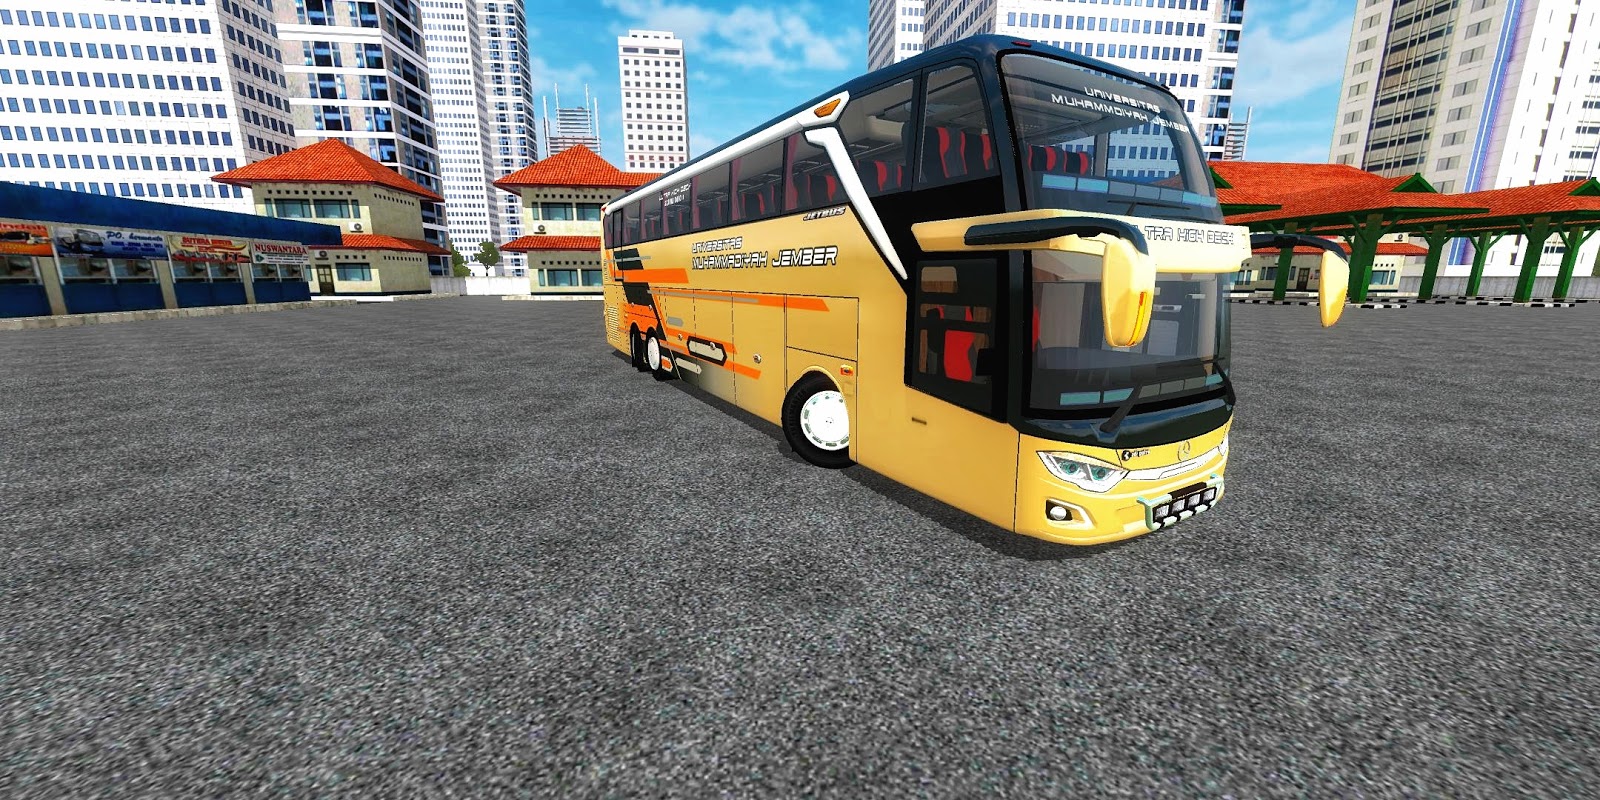 Mod trendy towers. Симулятор автобуса Индонезии. Bus Simulator Indonesia с модами. Модный автобус. Indonesia - Android Bus Simulator моды на машины.